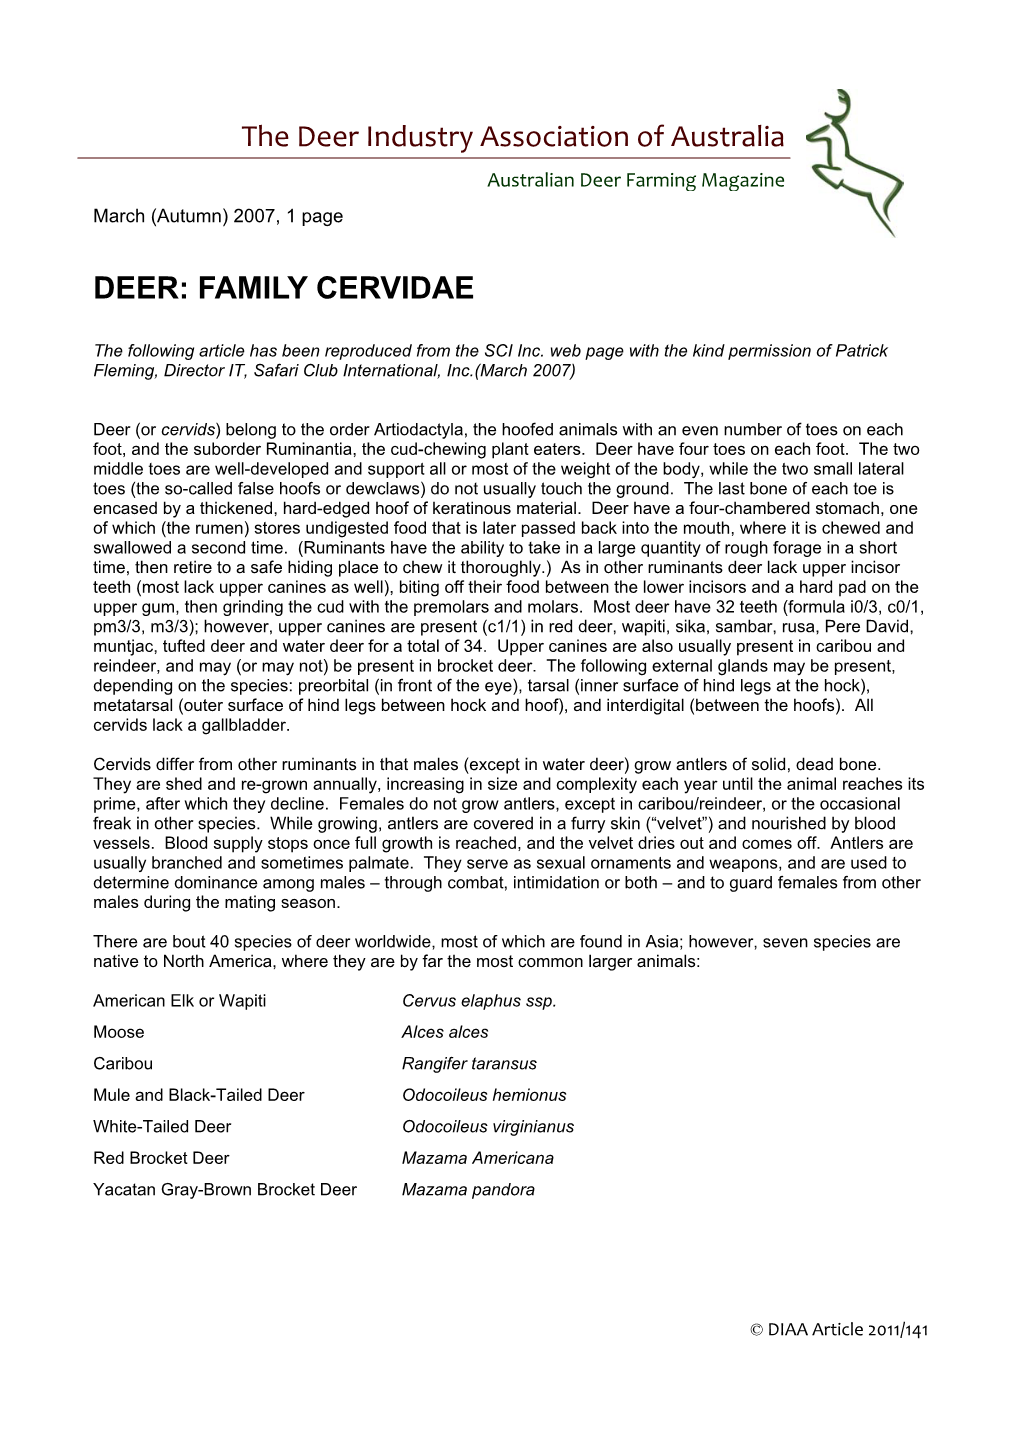 Deer: Family Cervidae